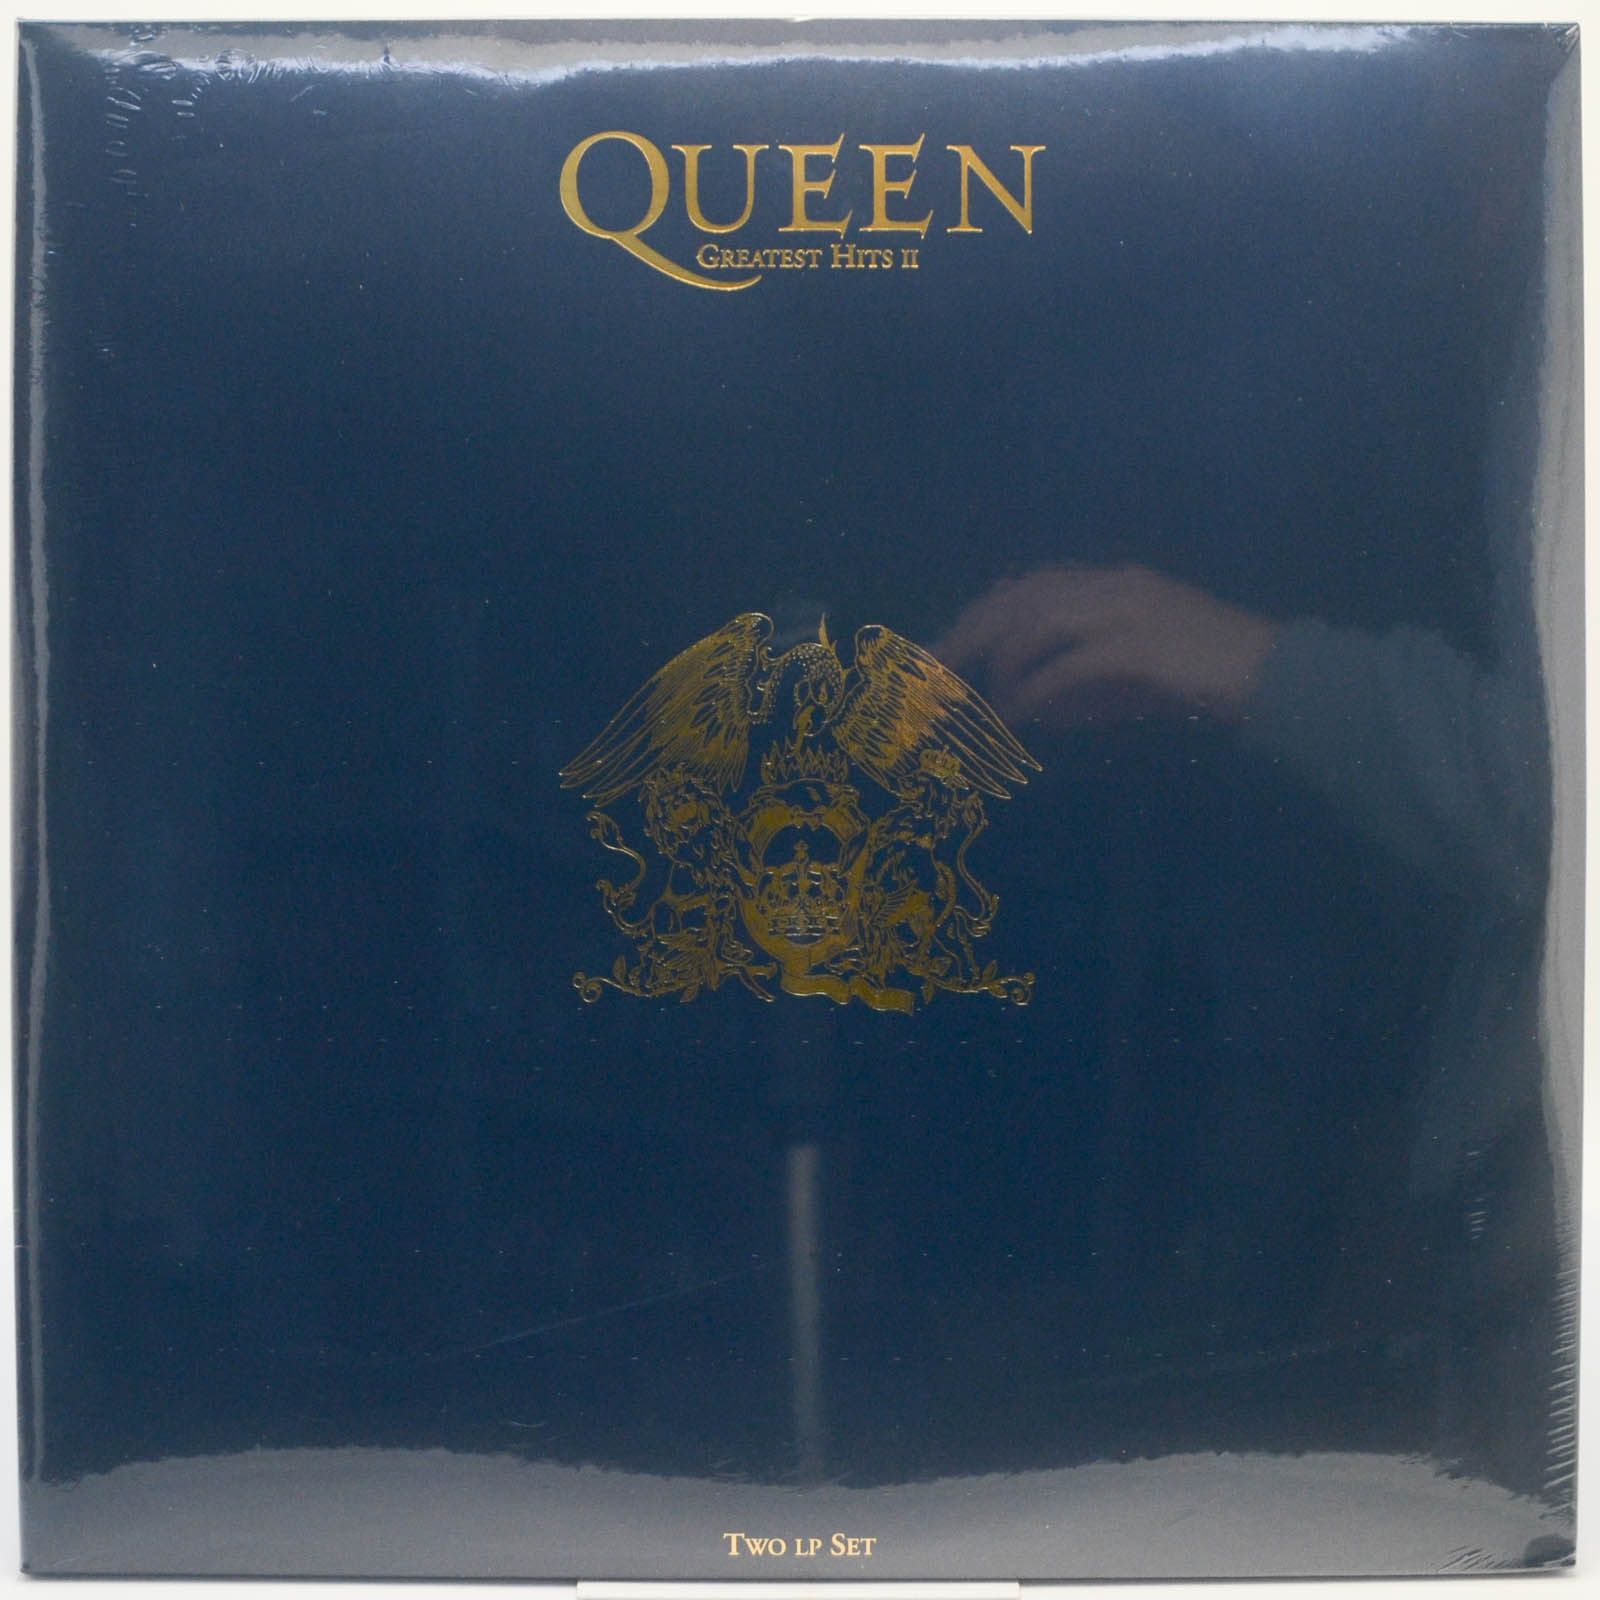 Queen — Greatest Hits II (2LP), 1991